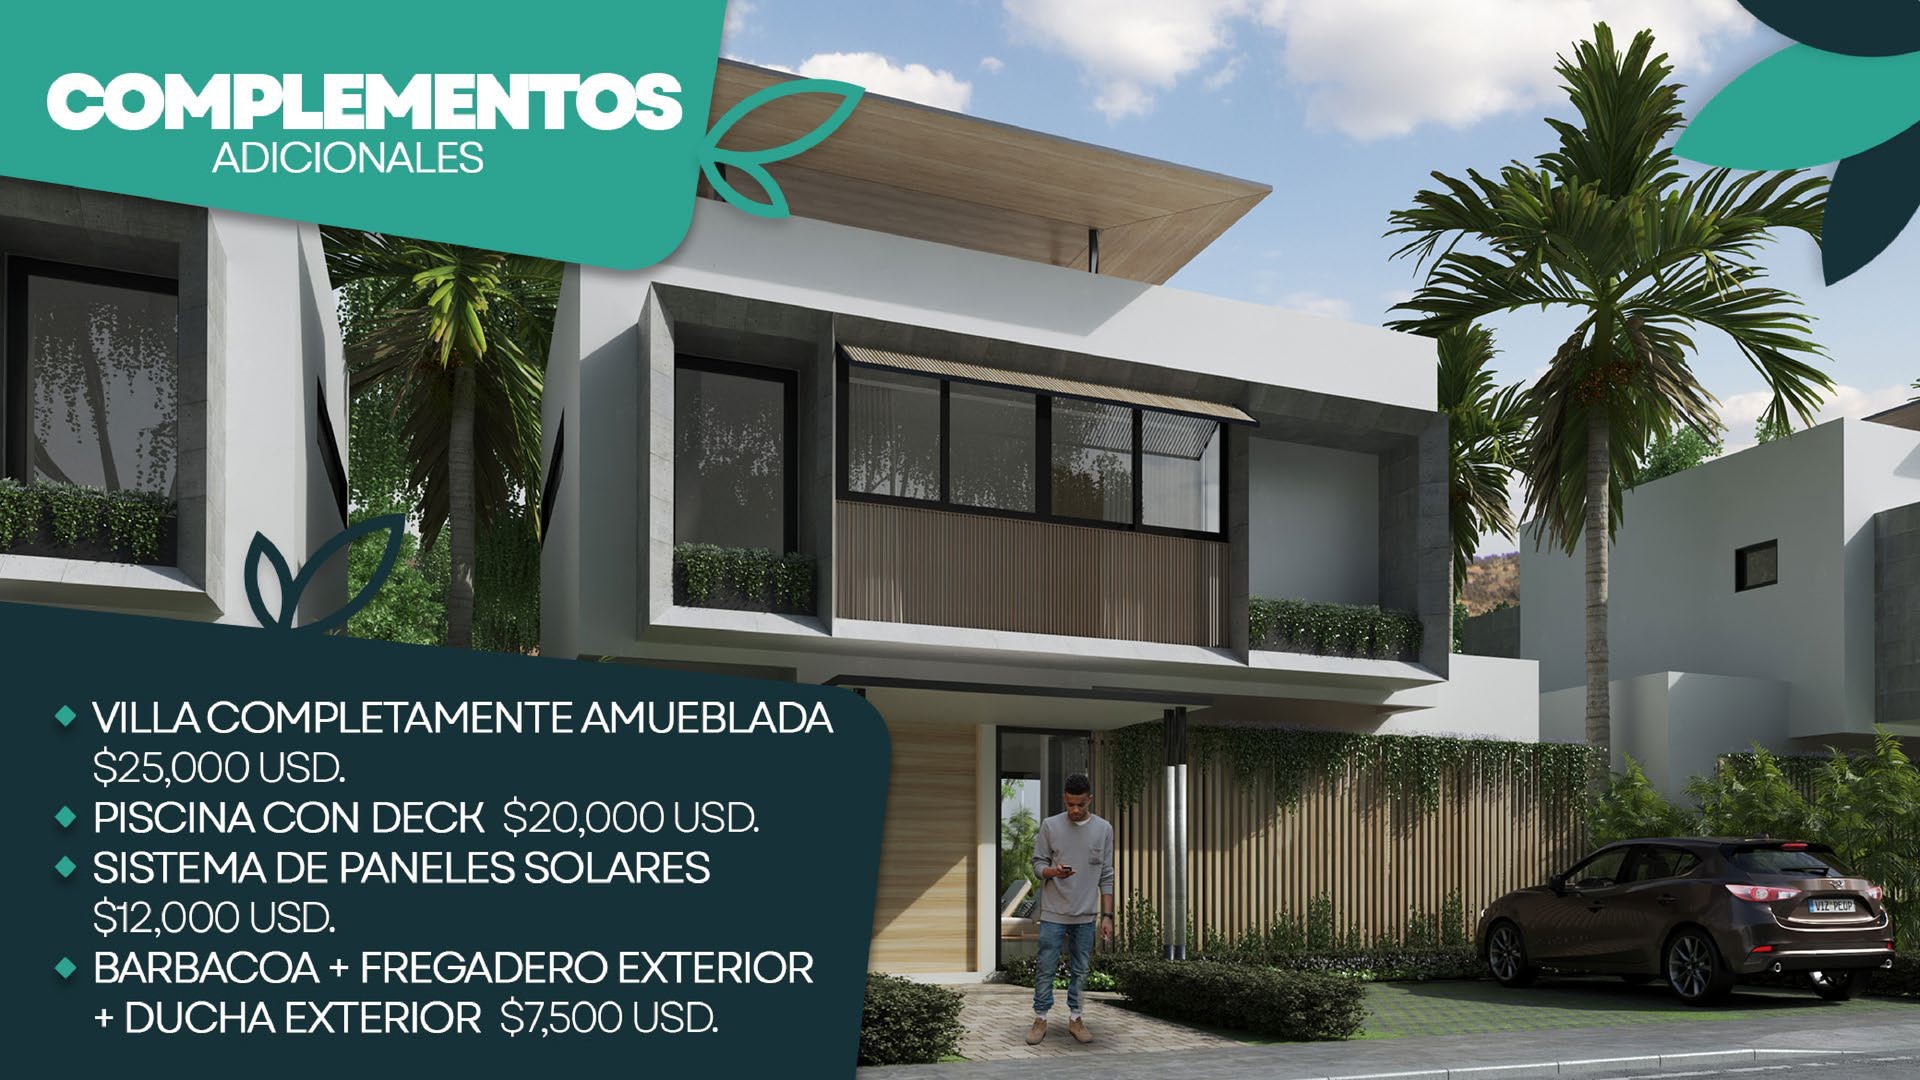 casas vacacionales y villas - Hermoso Proyecto en construccion en Punta Cana, Villas de 2 y 3 hab, amobladas.  4